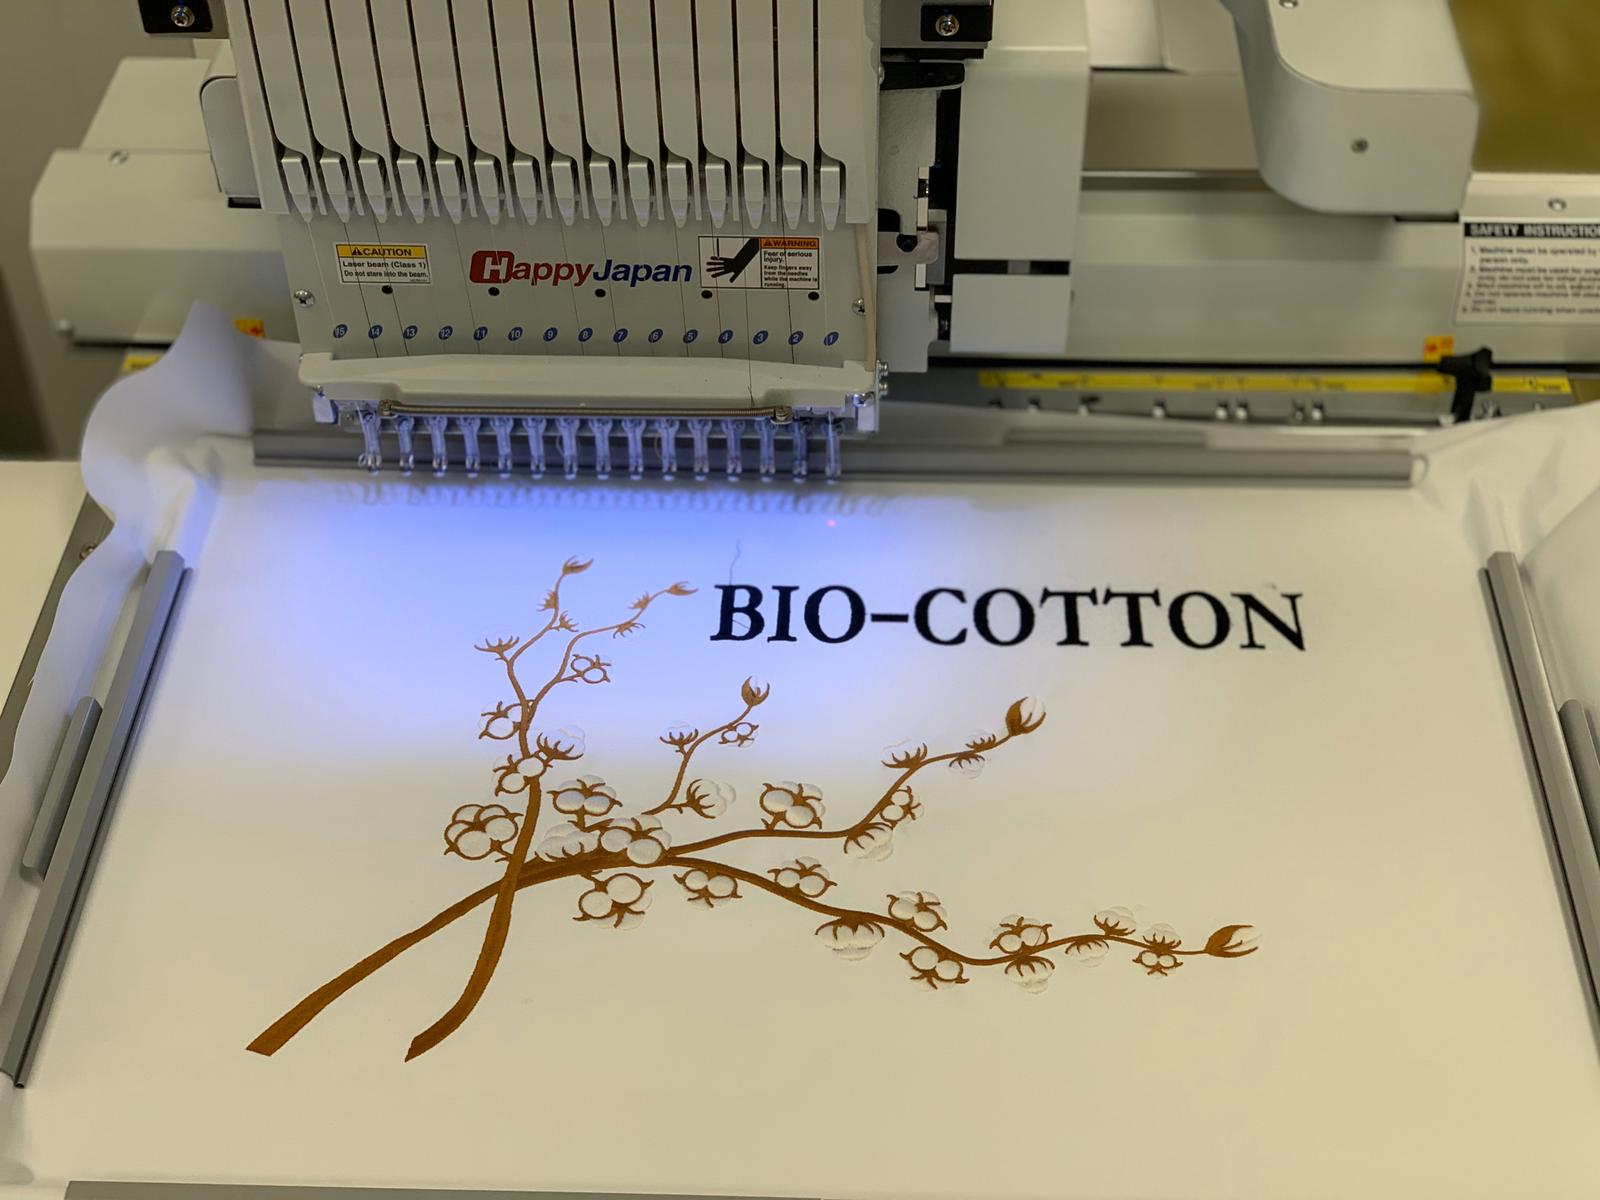 Embroidery Service a ComuniKart 2020 con i Nuovissimi Filati in Cotone Bio e Poliestere Riciclato, e Tante Altre Novità